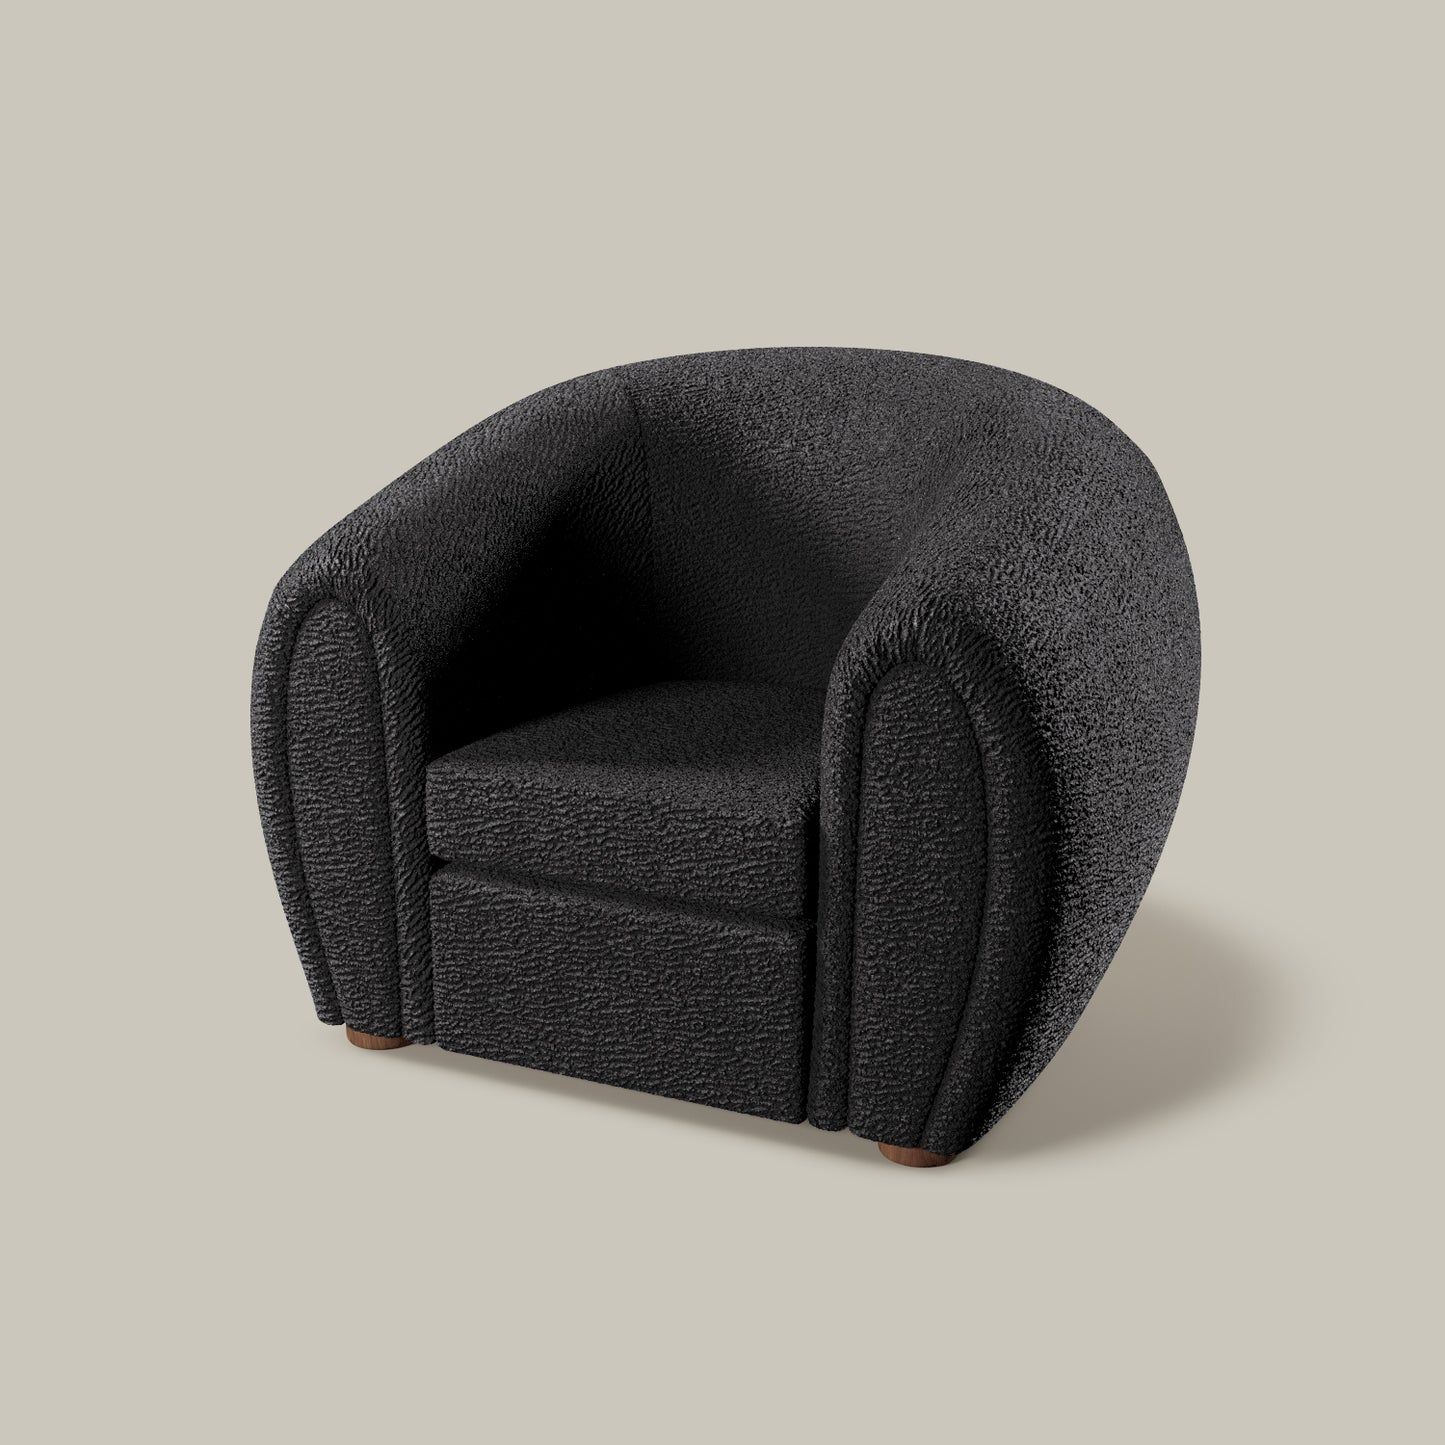 Rouen Chair